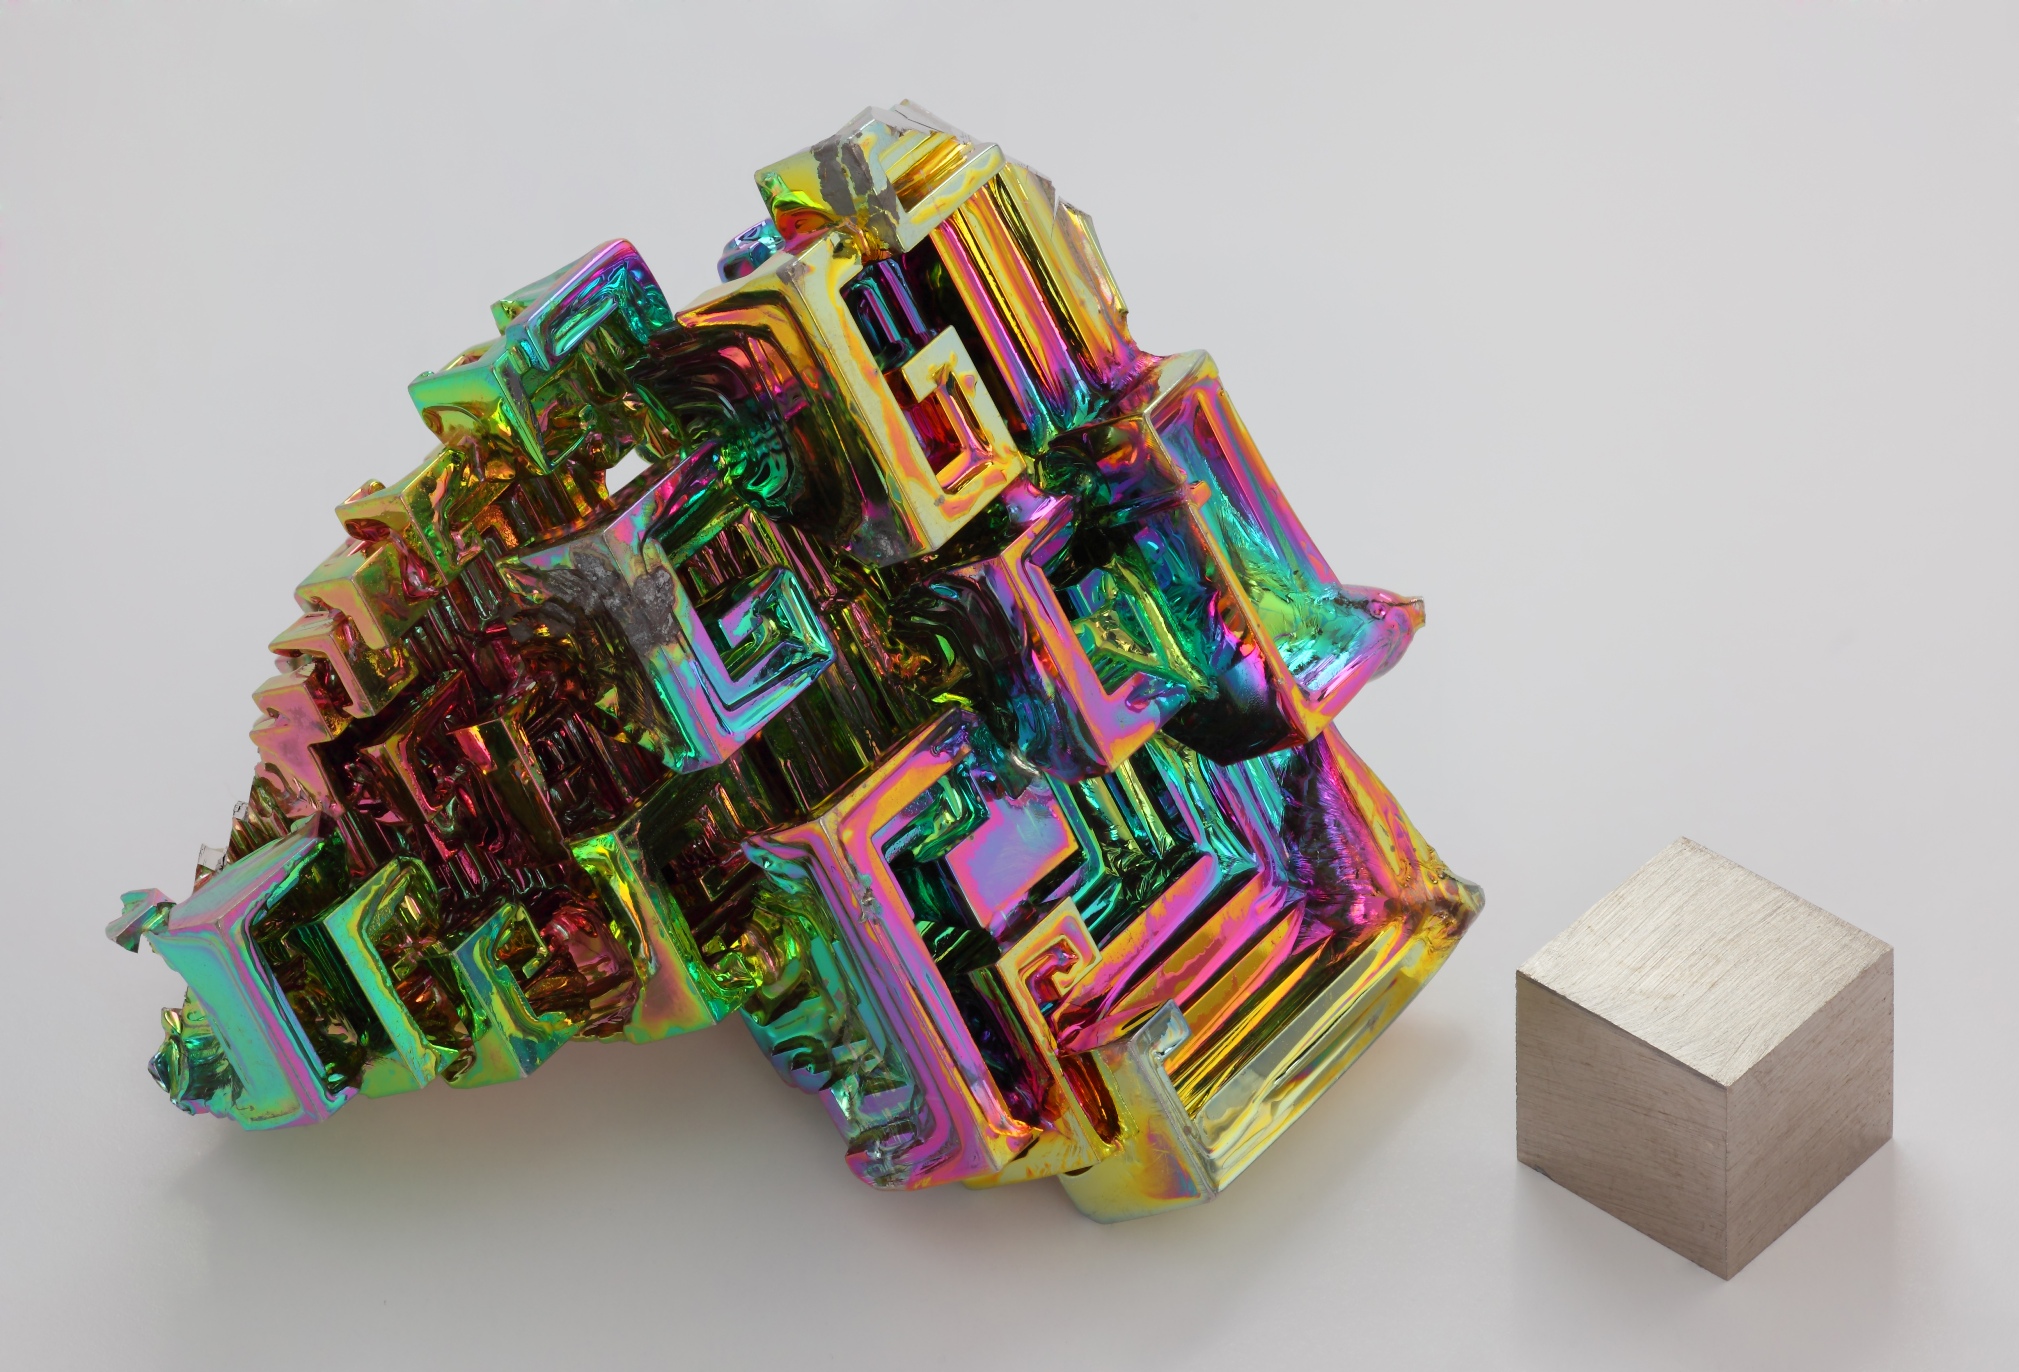 Le bismuth défie la théorie de la supraconductivité. Ici, cristal obtenu par cristallogenèse artificielle de bismuth métallique à côté d'un cube d'1 cm3 de bismuth pur à 99,99 %, pour comparaison de taille. L'irisation est due à une couche d'oxyde très mince. © Alchemist-hp, Wikipédia, CC by-sa 3.0